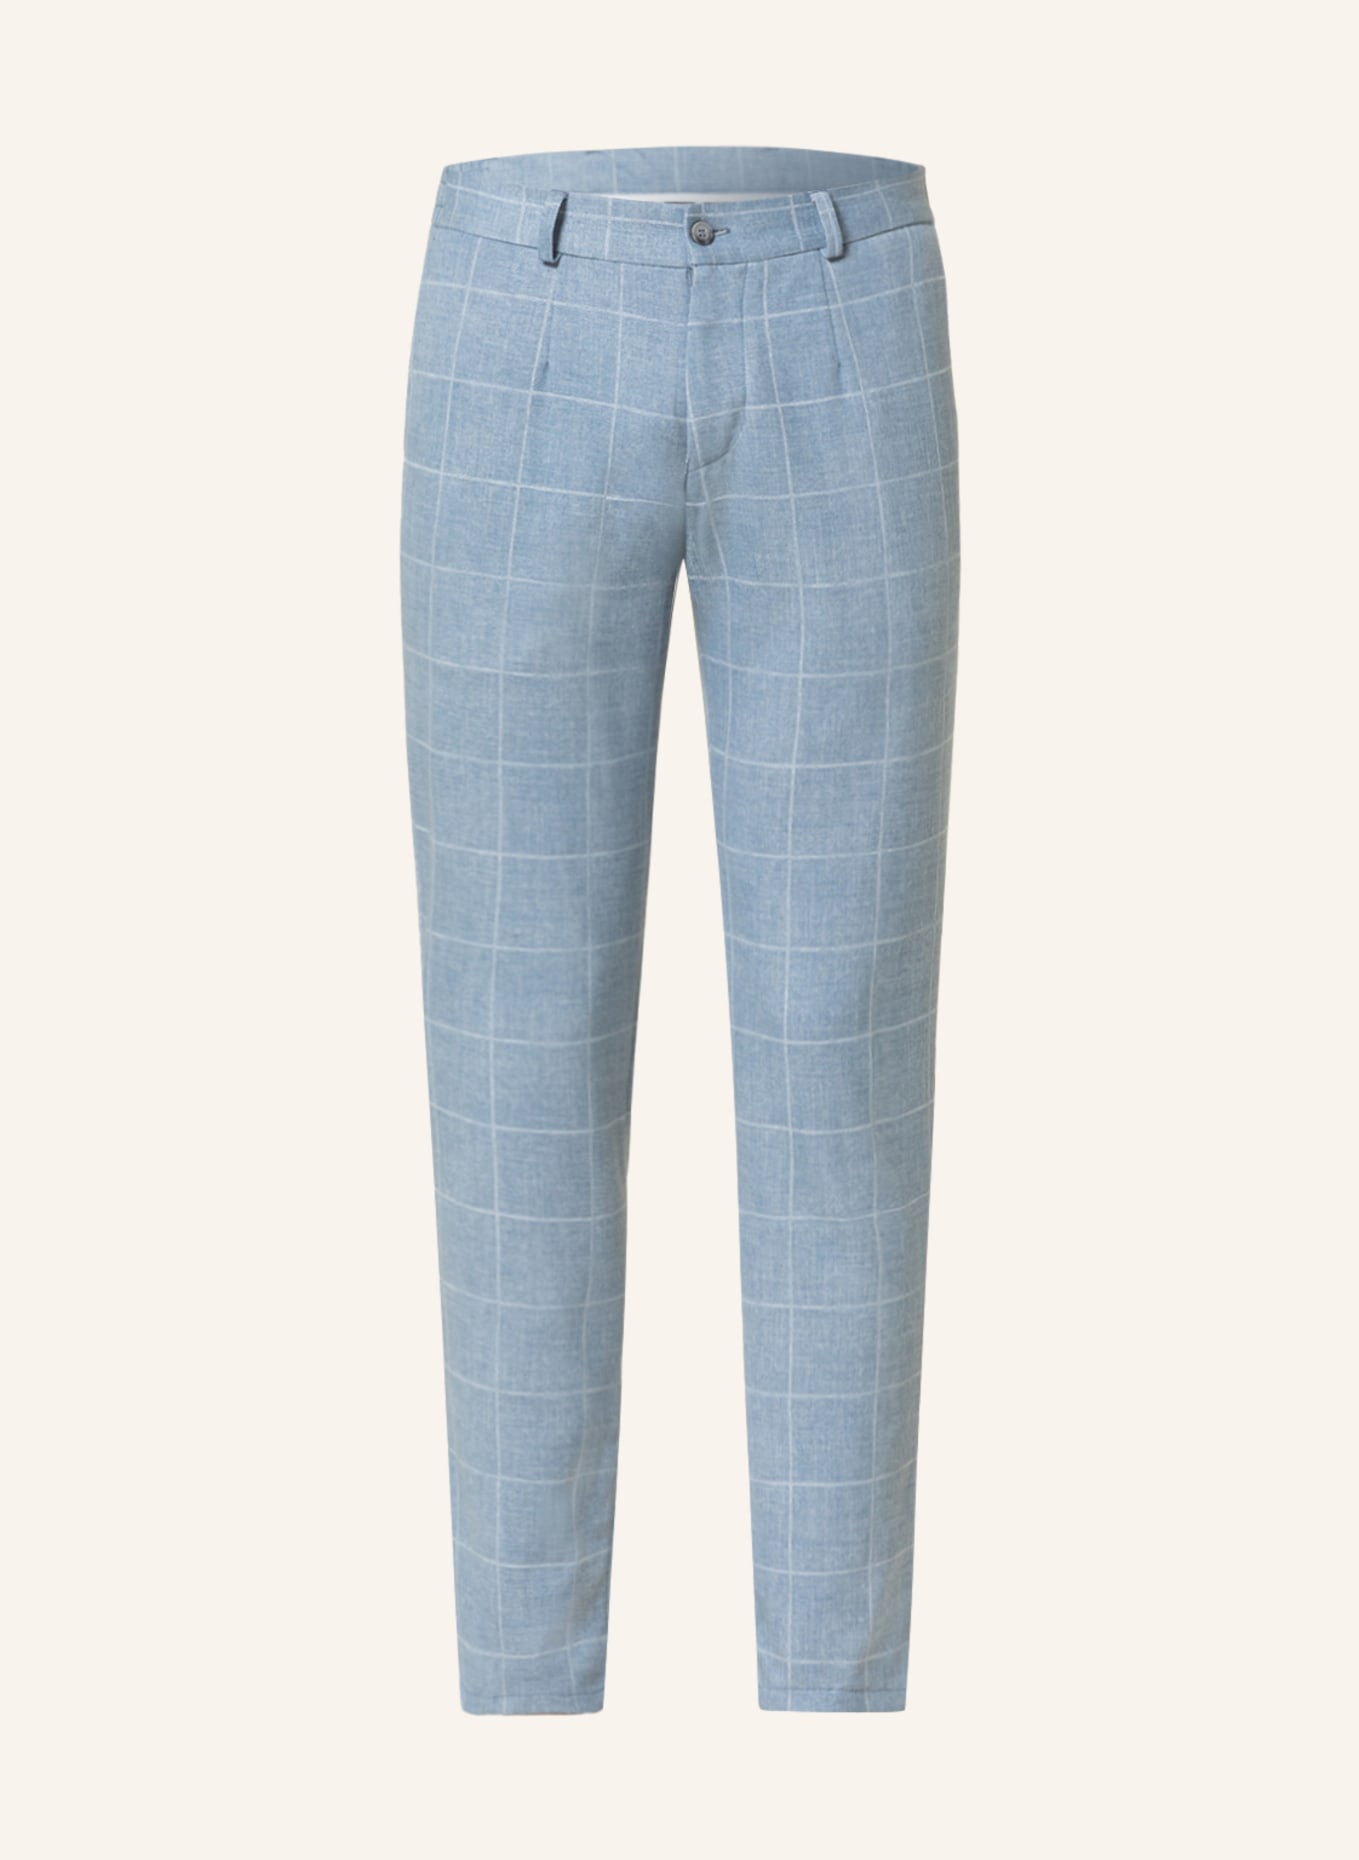 PAUL Suit trousers extra slim fit, Color: LIGHT BLUE (Image 1)